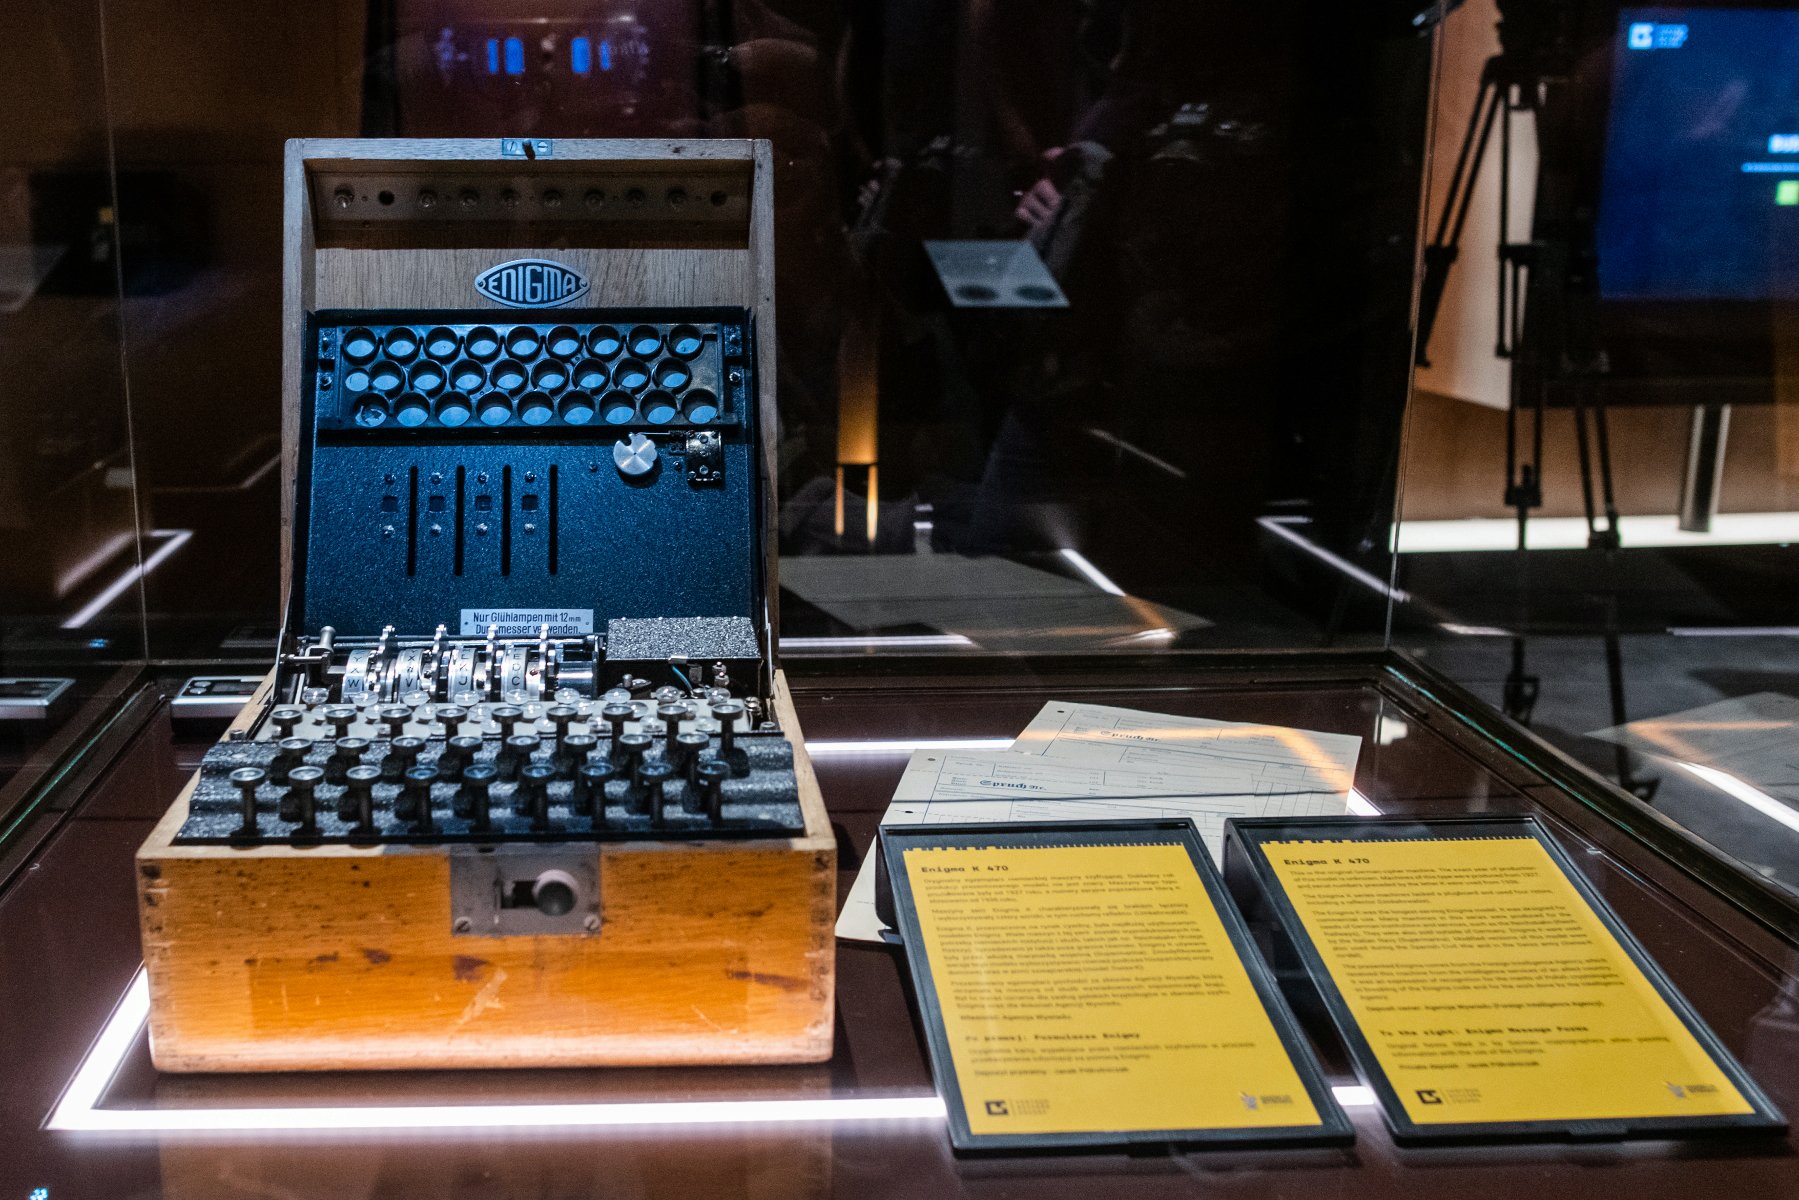 Zdjęcie przedstawia niemiecką maszynę szyfrującą Enigma umieszczoną w gablocie. Obok urządzenia widać dwie tabliczki informacyjne z opisem. - grafika artykułu